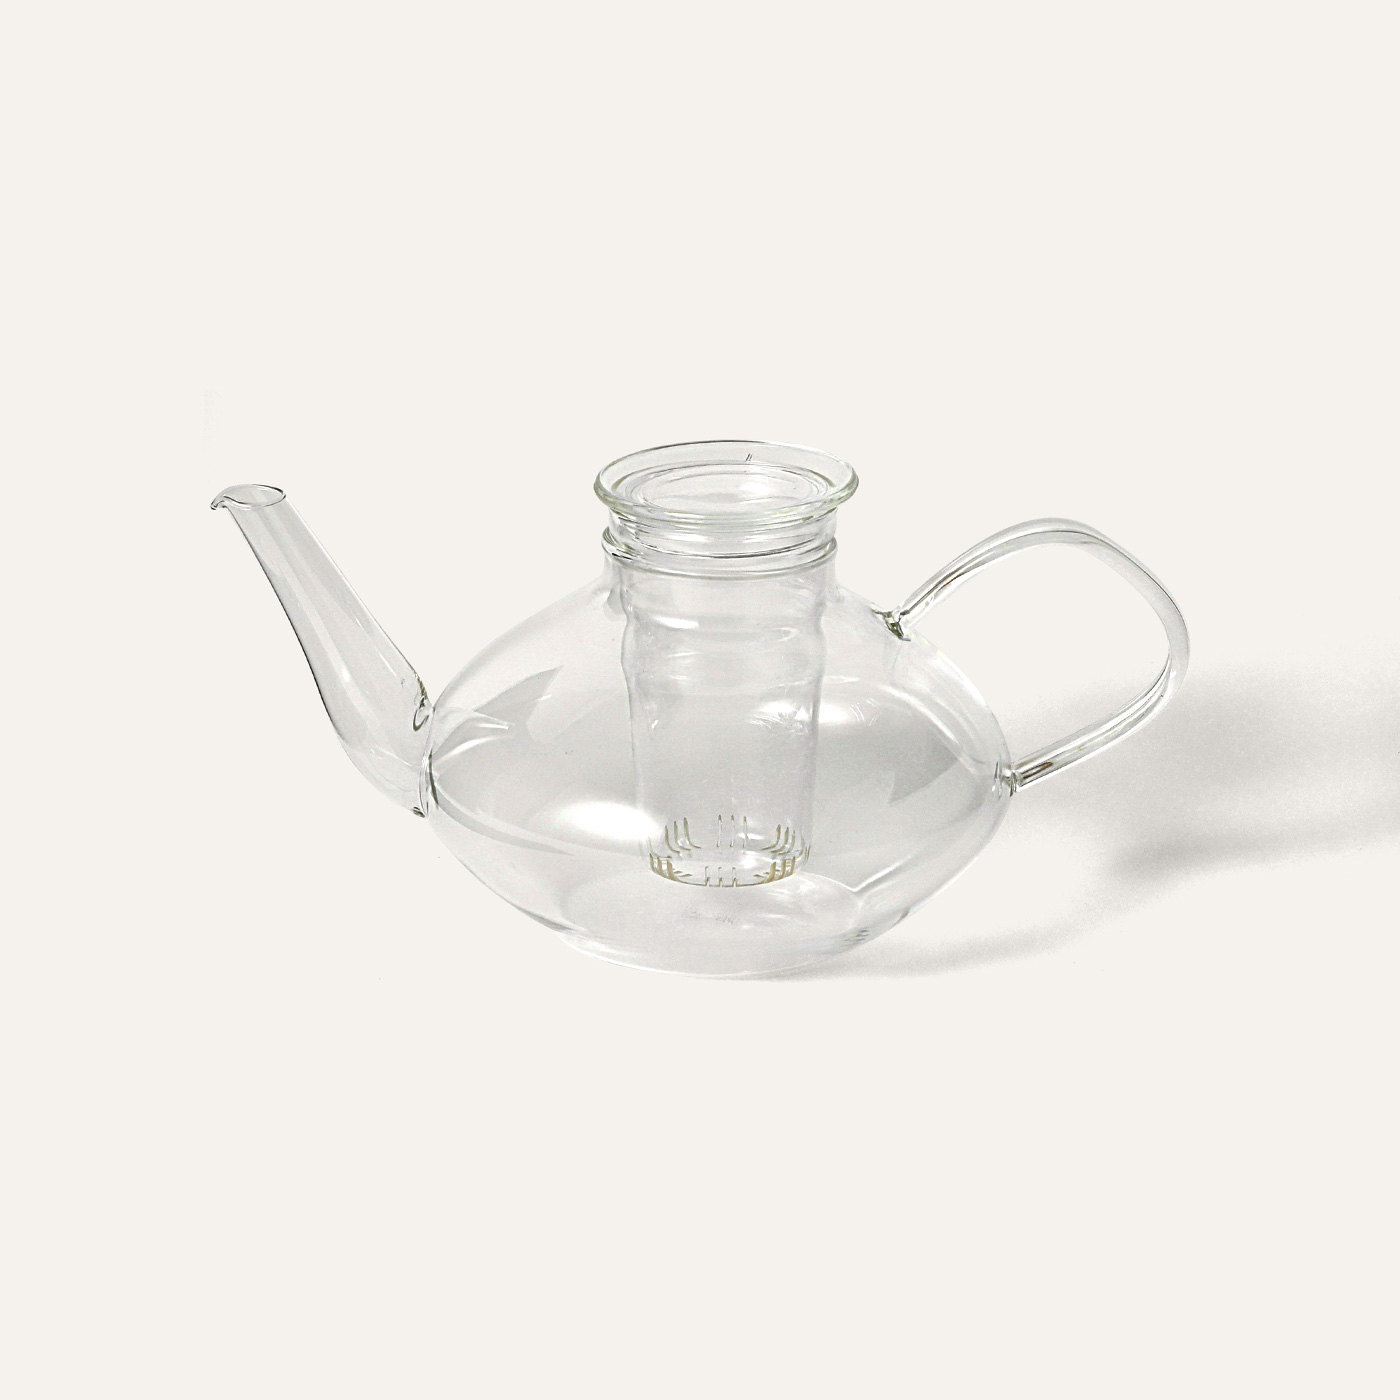 Jena Glas teapot